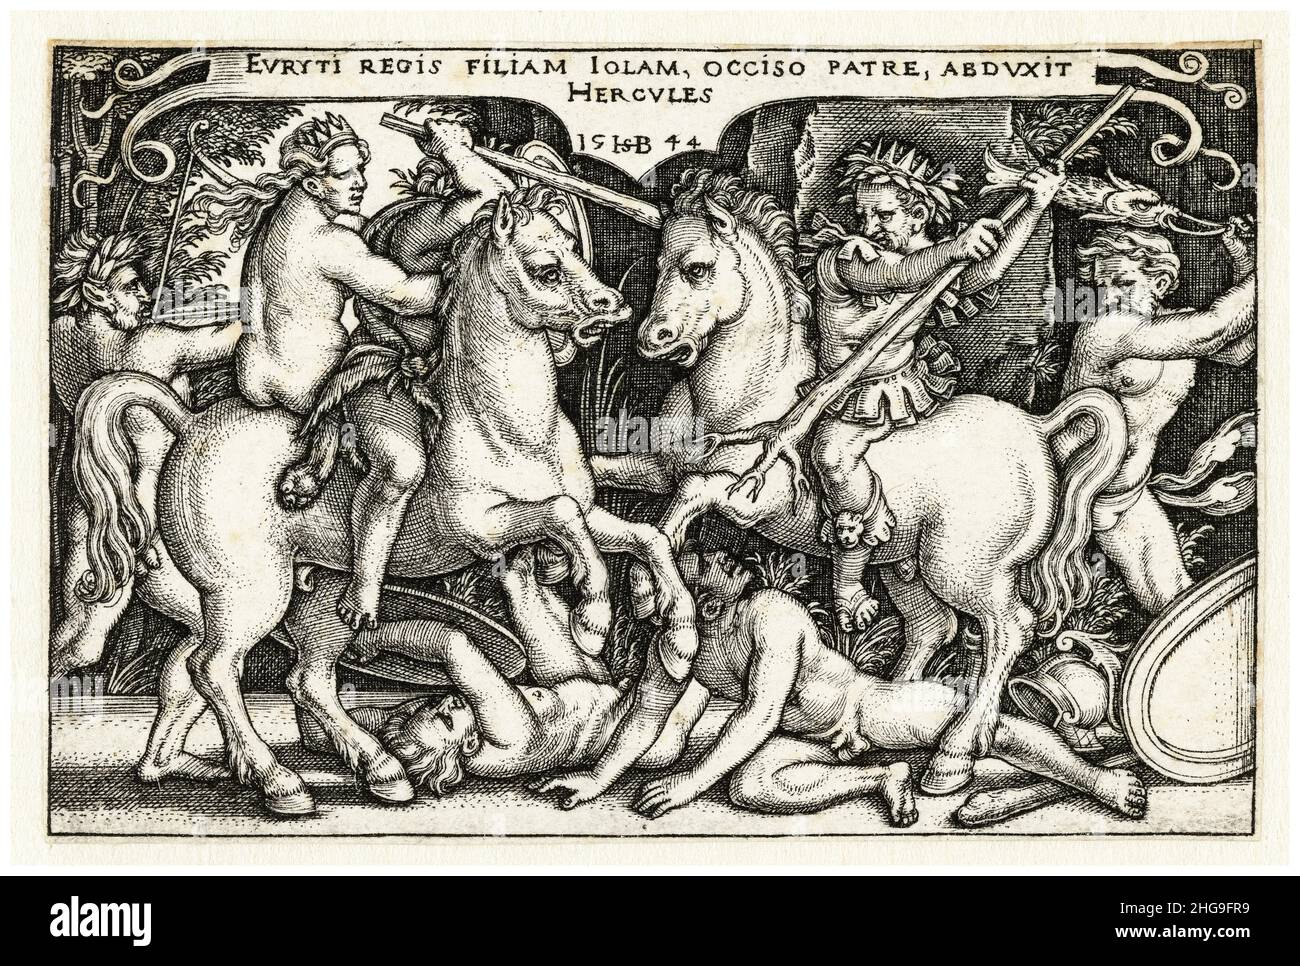 Hercules rapisce Iole, incisione di Sebald Beham, 1544 Foto Stock